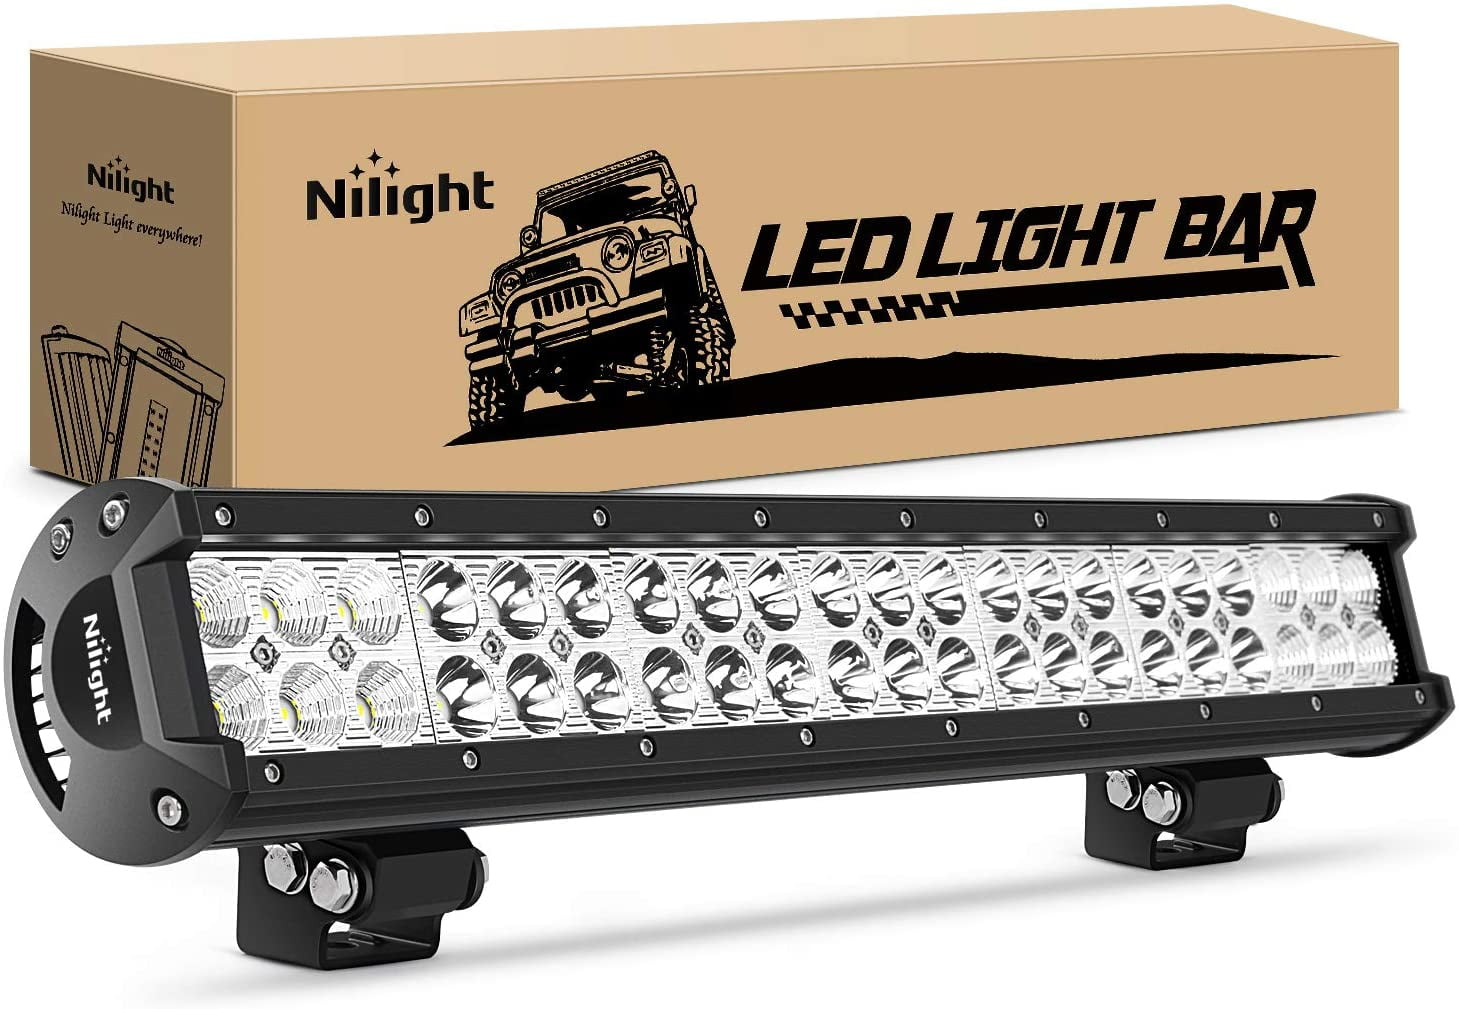 2x 7" inch 180W Single Row Flood LED Light Bar Slim Fog Lamp Offroad Truck Car